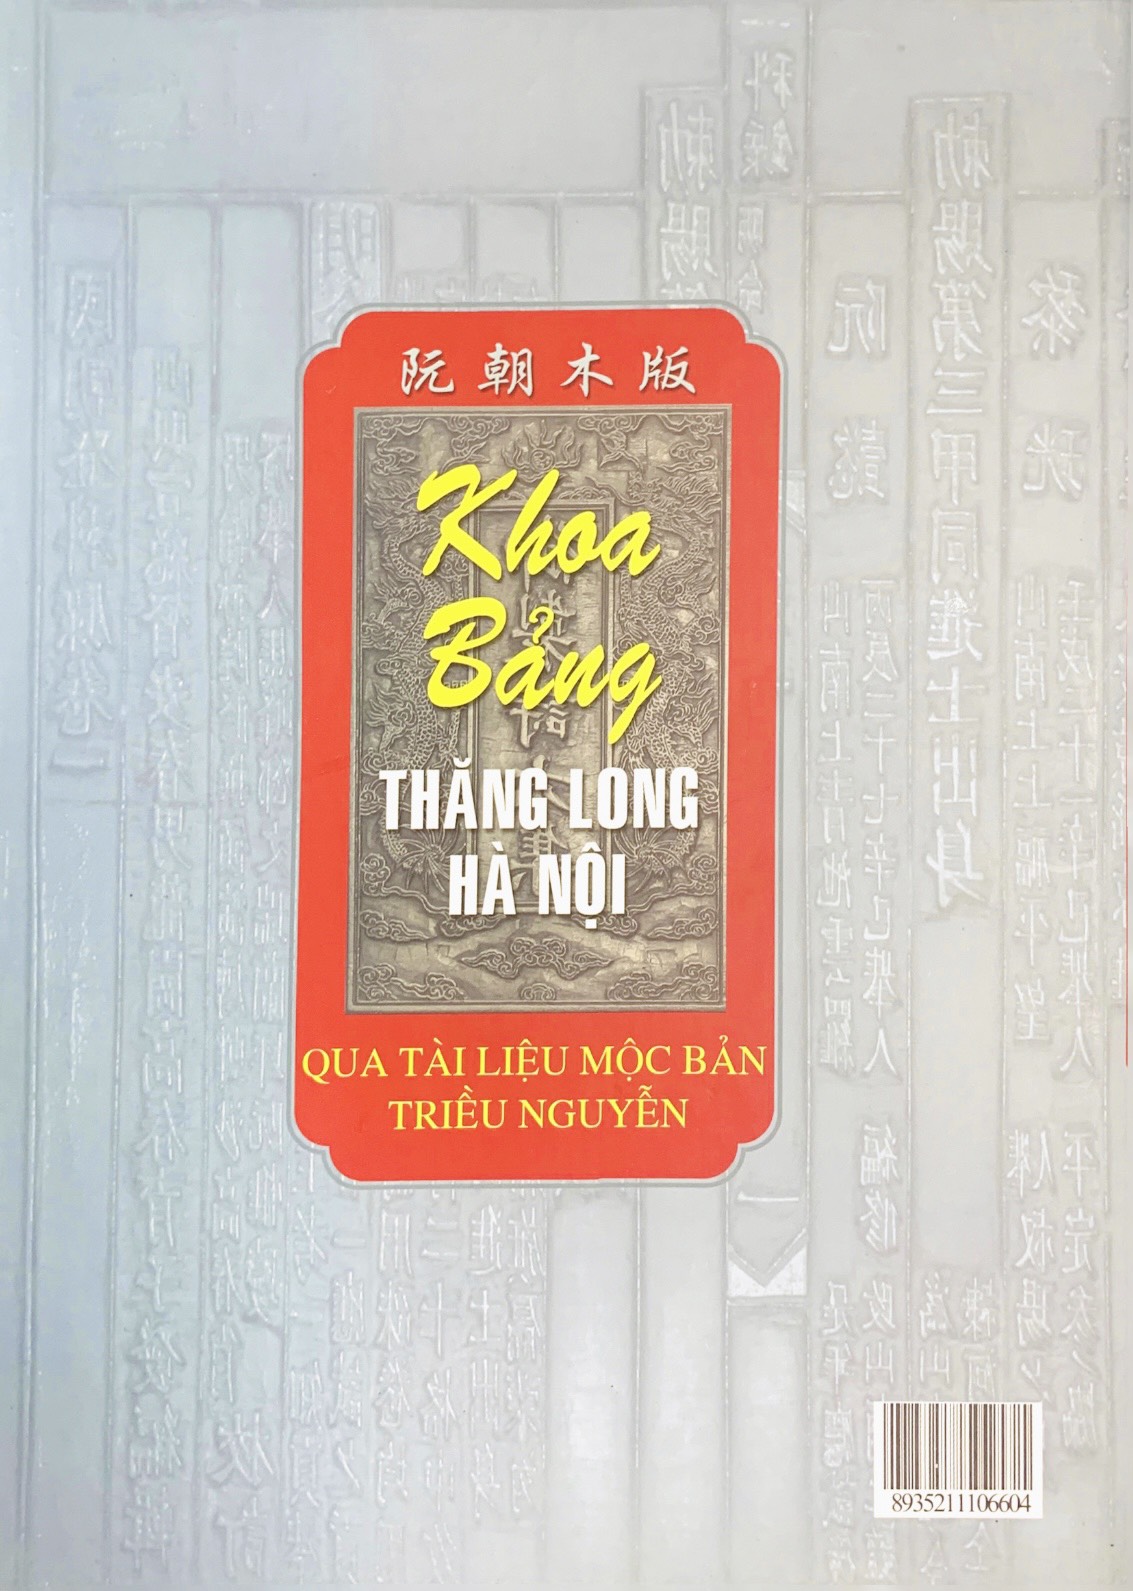 Khoa bảng Thăng Long – Hà Nội qua tài liệu mộc bản triều Nguyễn (xuất bản 2010)